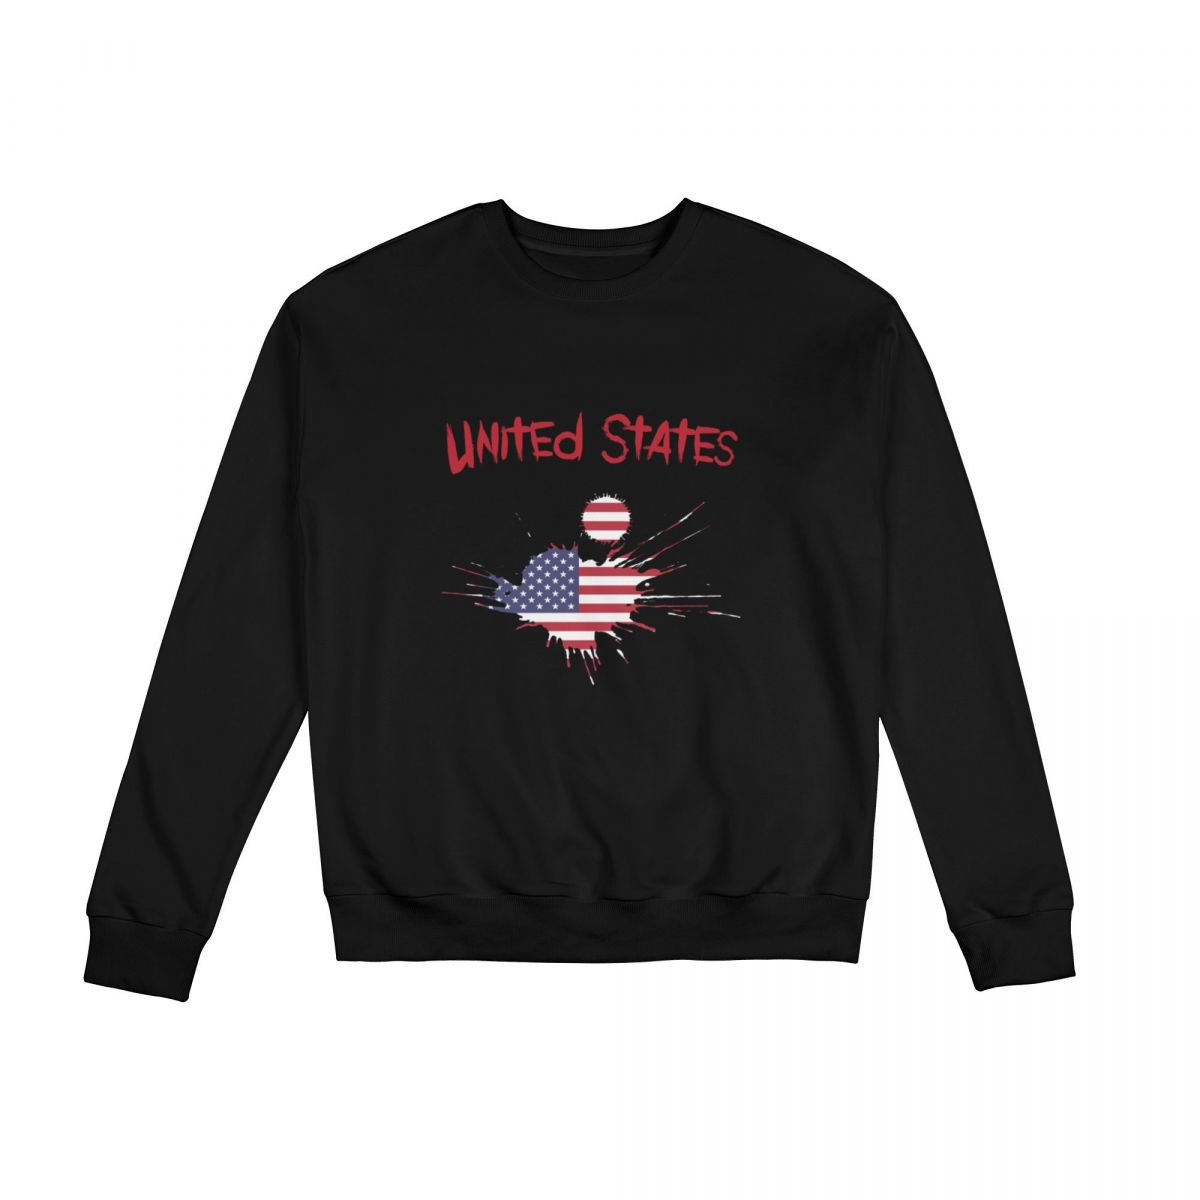 United States Ink Spatter Crew Neck Sweatshirt